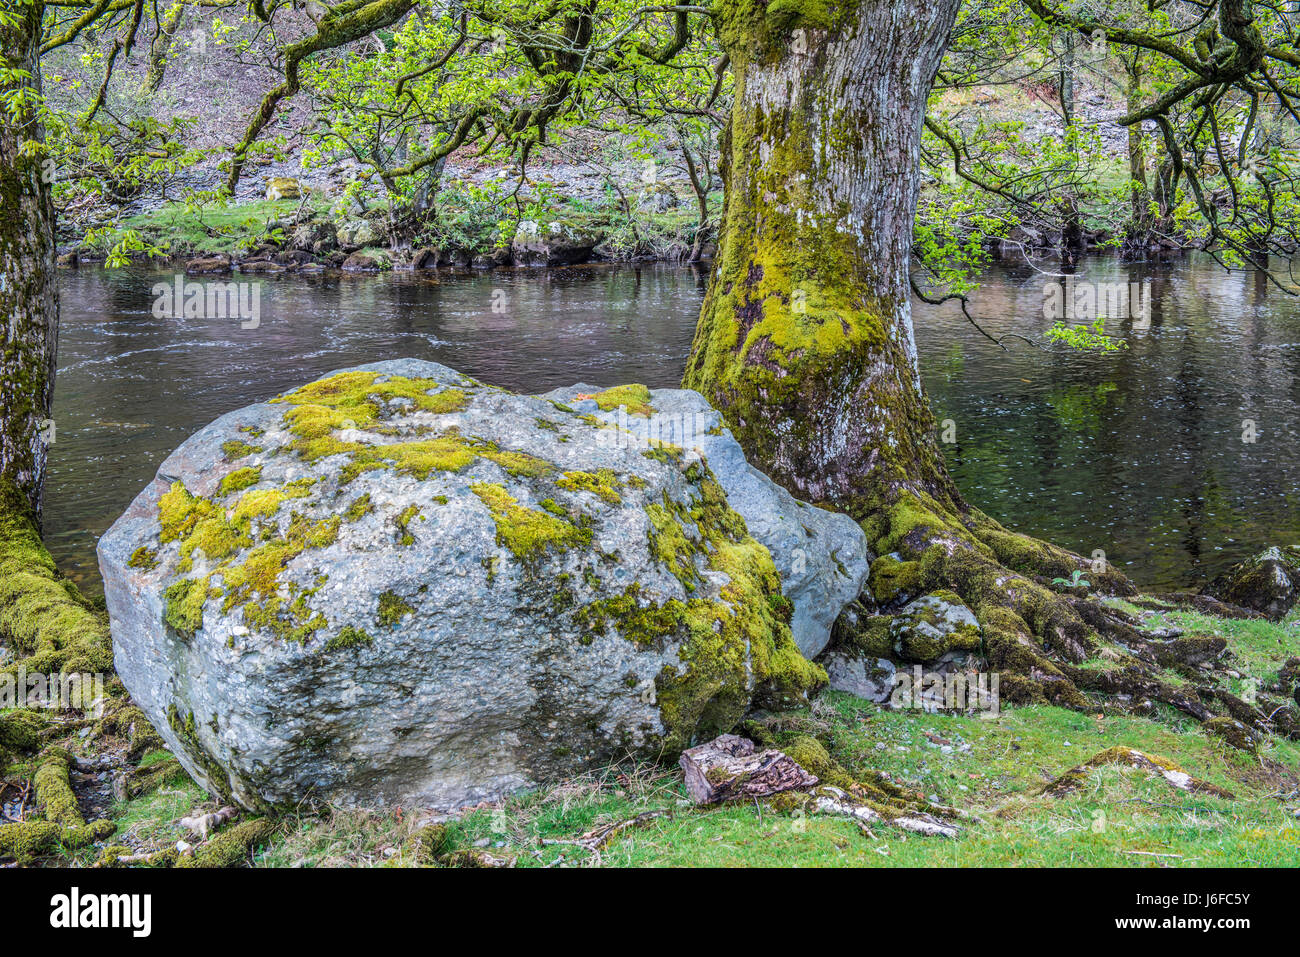 The River Elan at Elan Village in the Elan Valley Mid Wales Stock Photo